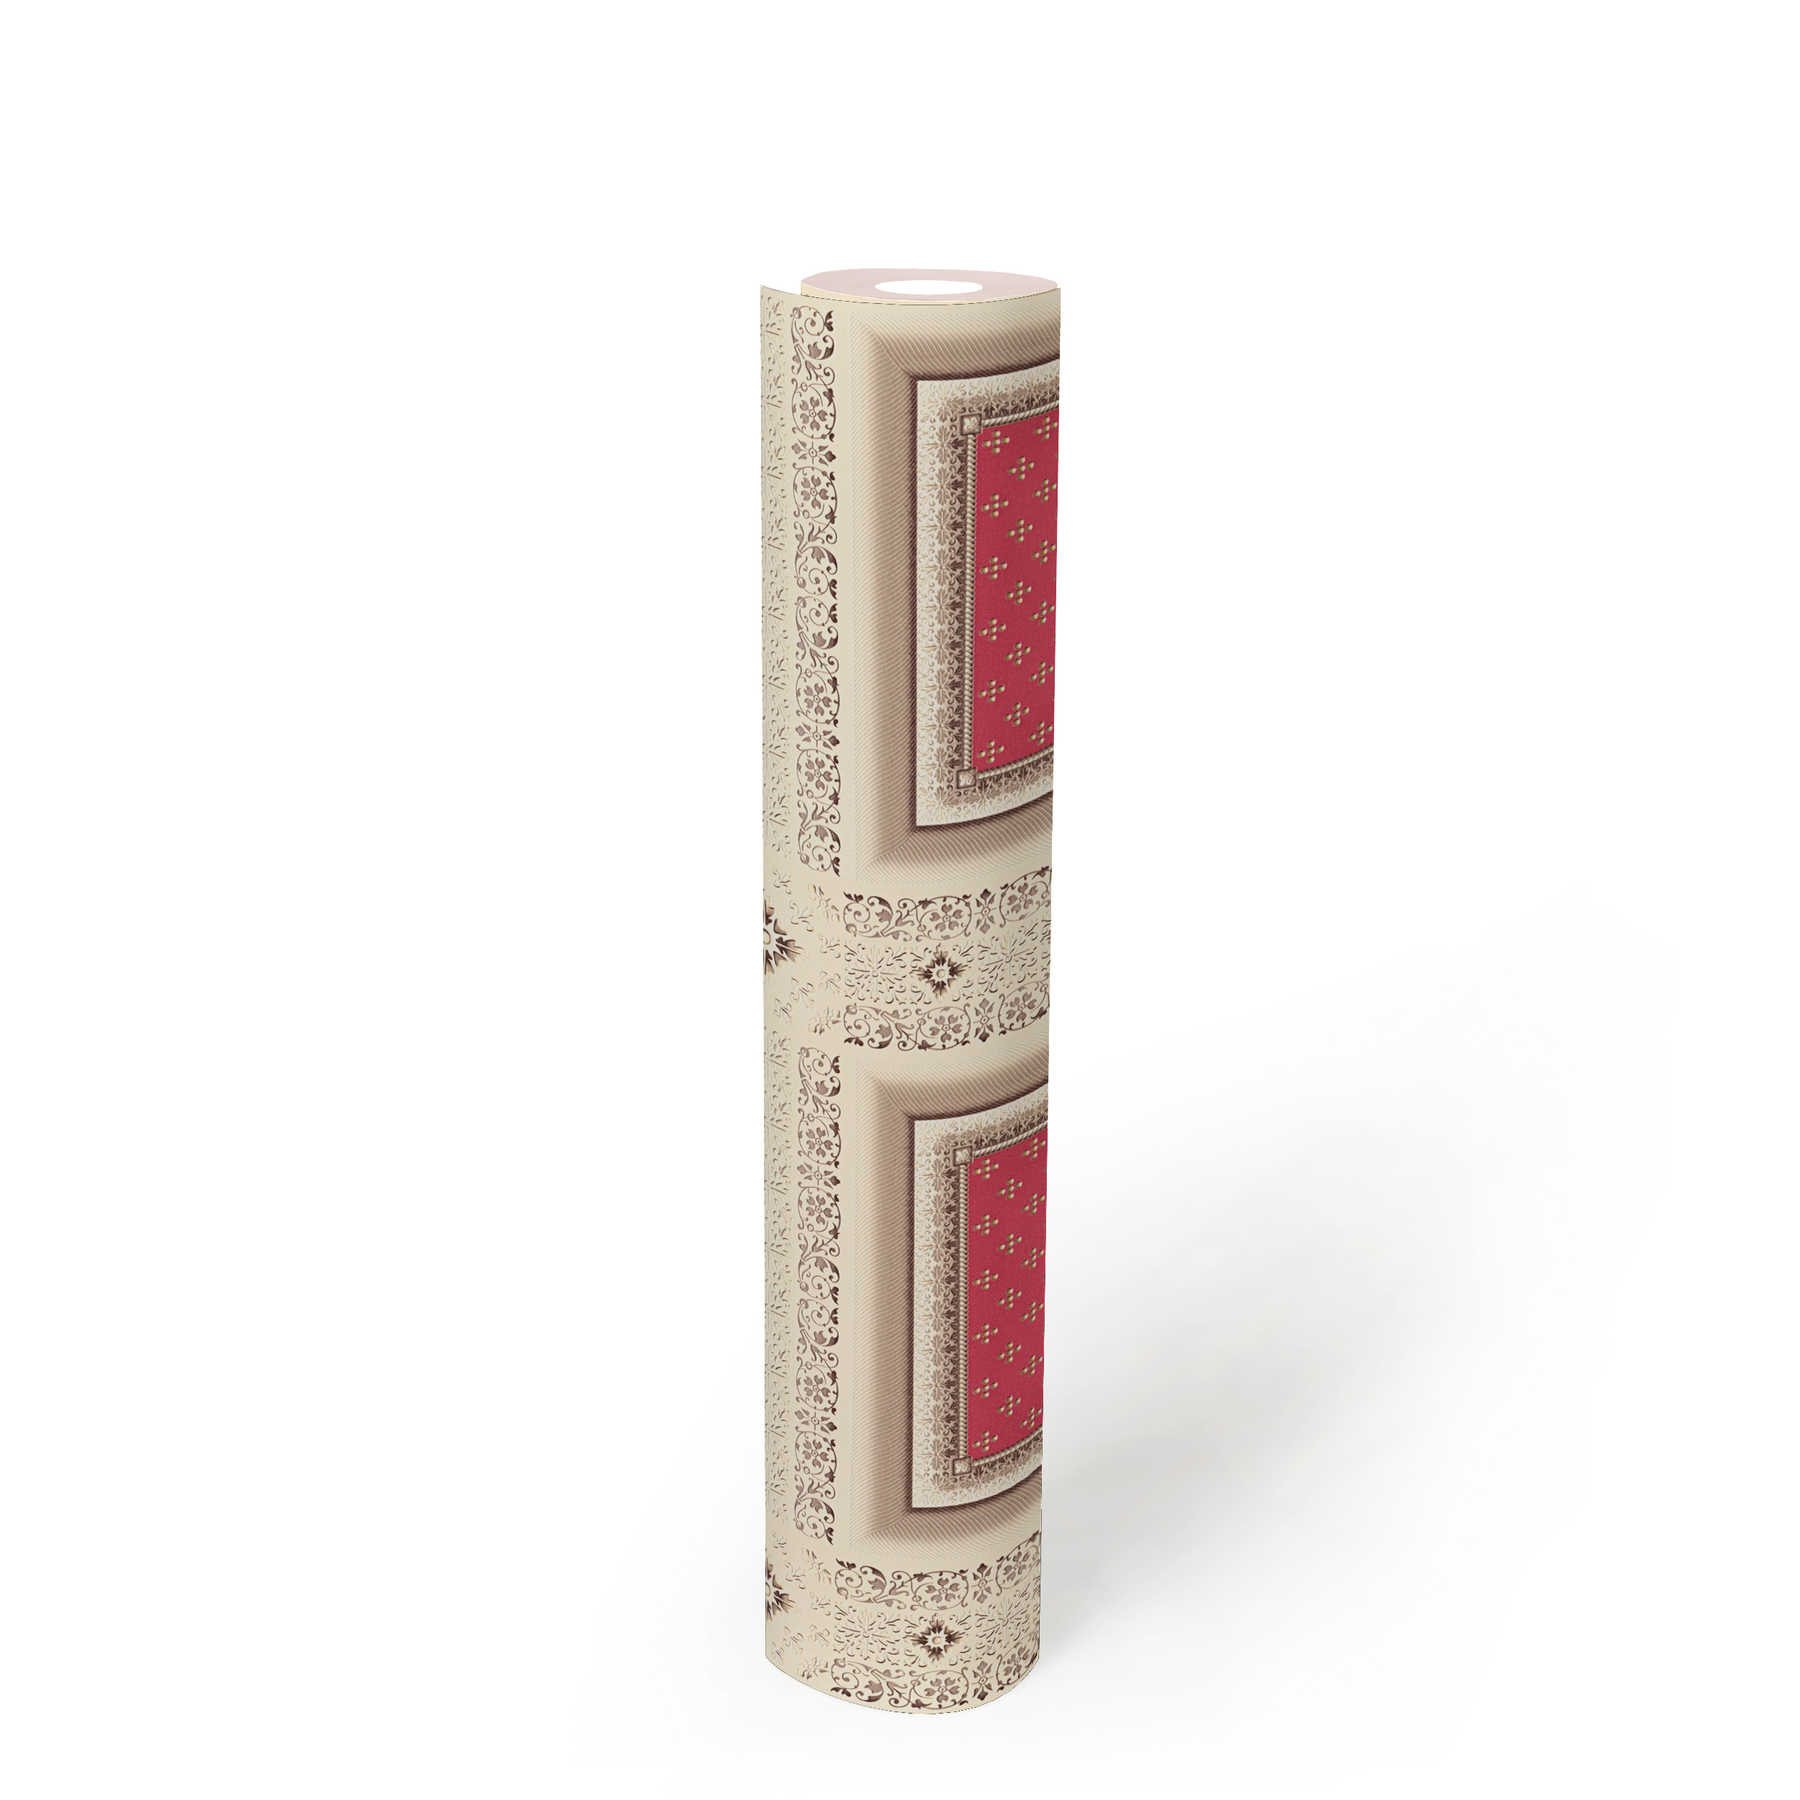             Carta da parati in tessuto non tessuto VERSACE in oro antico in stile scrigno - crema, rosso
        